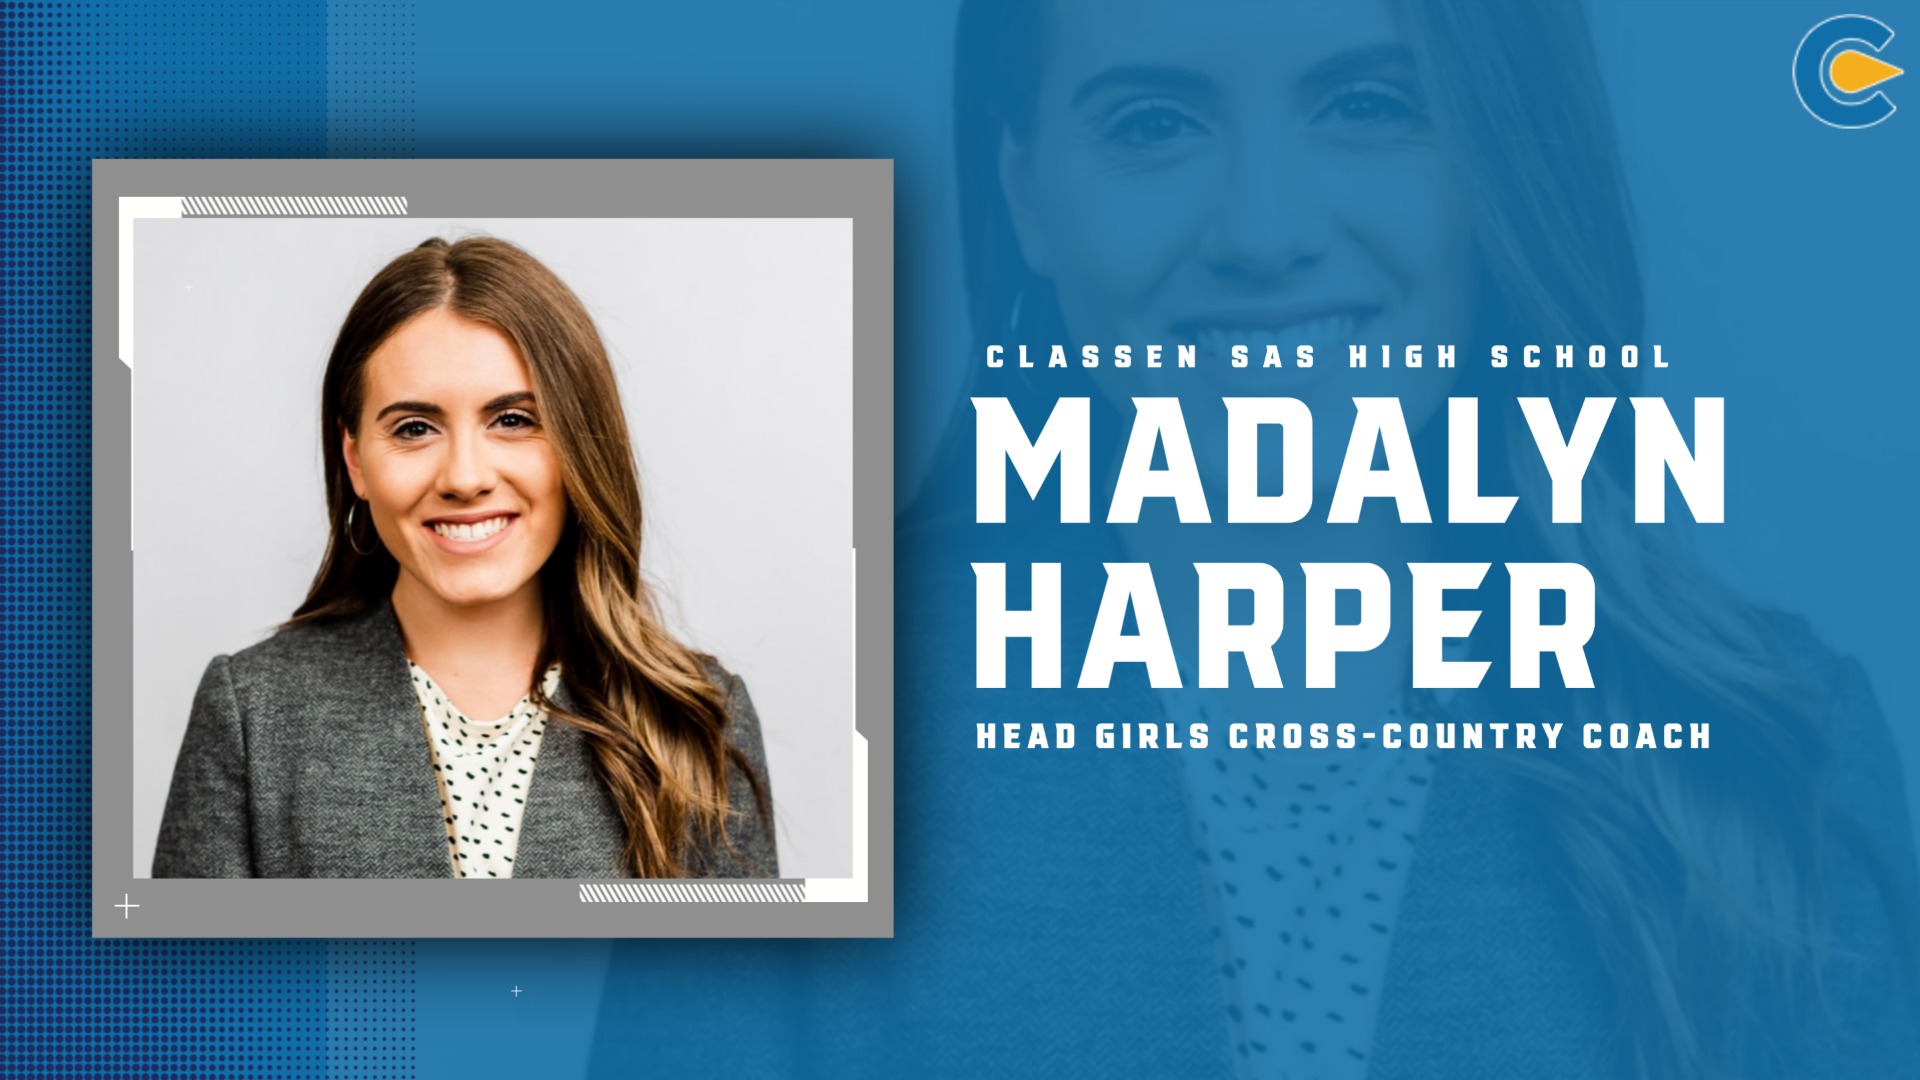 Slide 2 - Madalyn Harper Named Head Coach for Classen SAS Girls Cross-Country